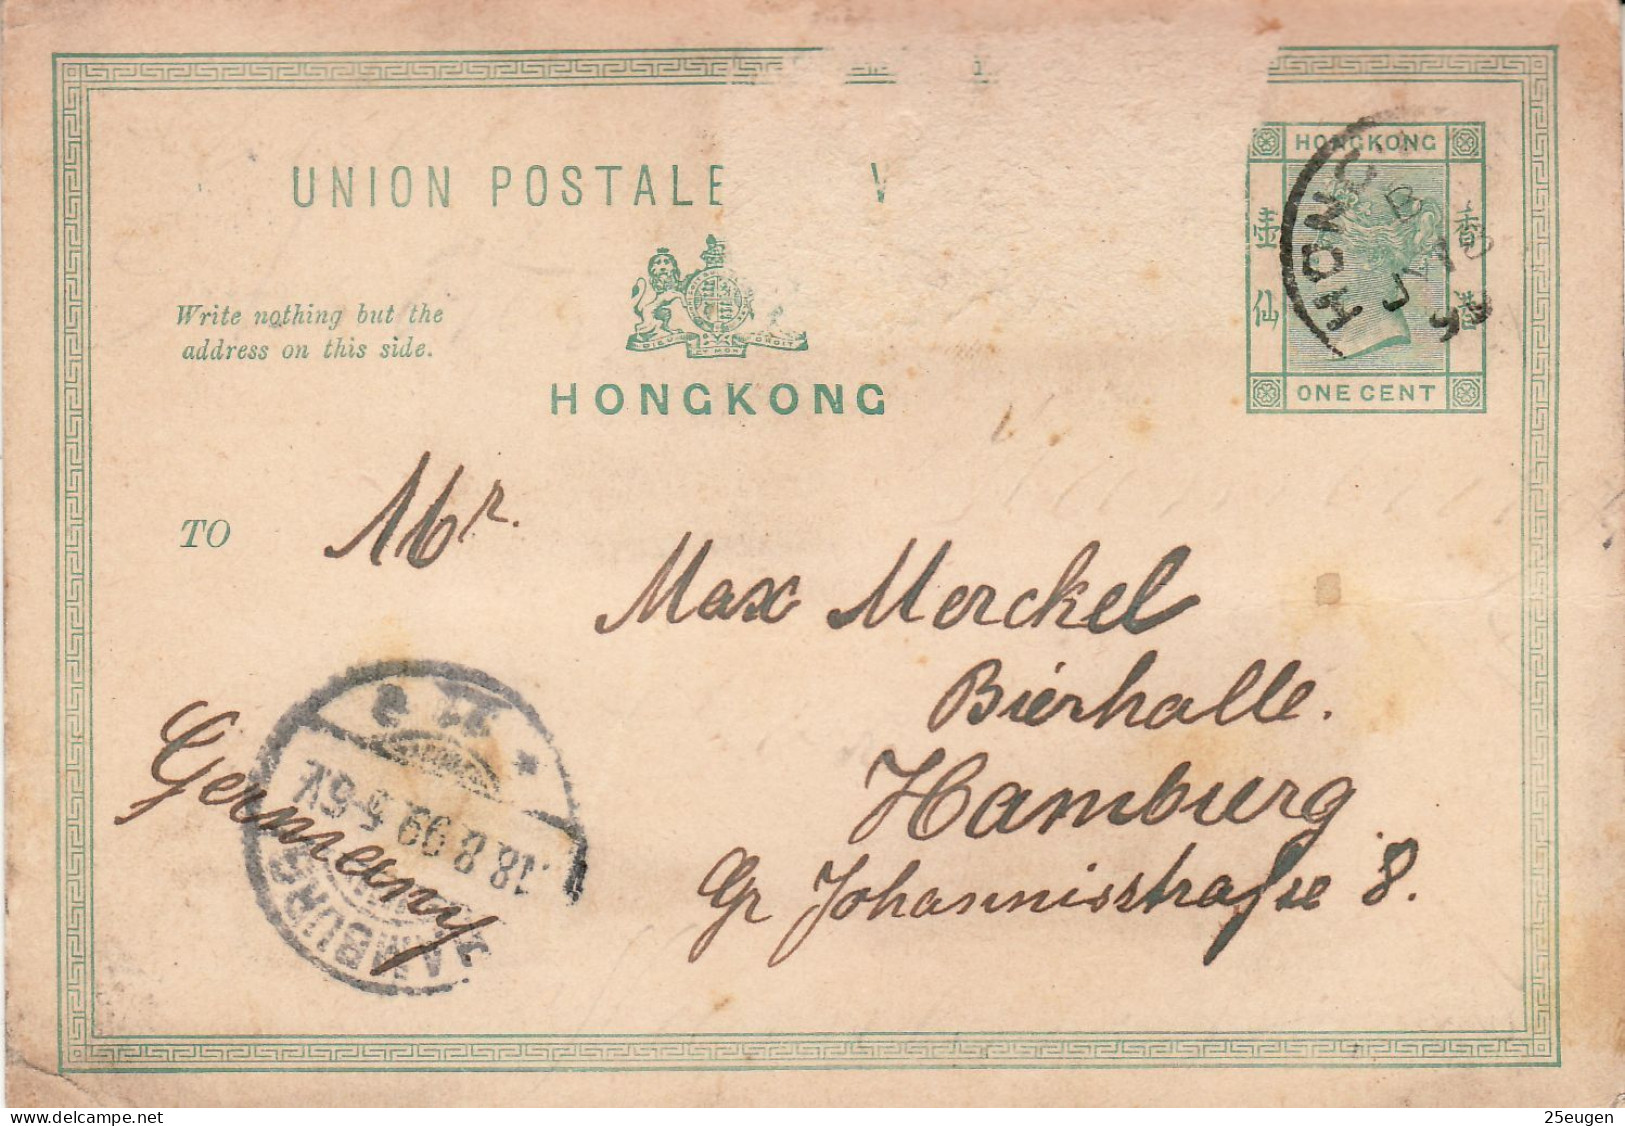 HONG KONG 1899  POSTCARD SENT FROM HONG KONG TO HAMBURG - Covers & Documents